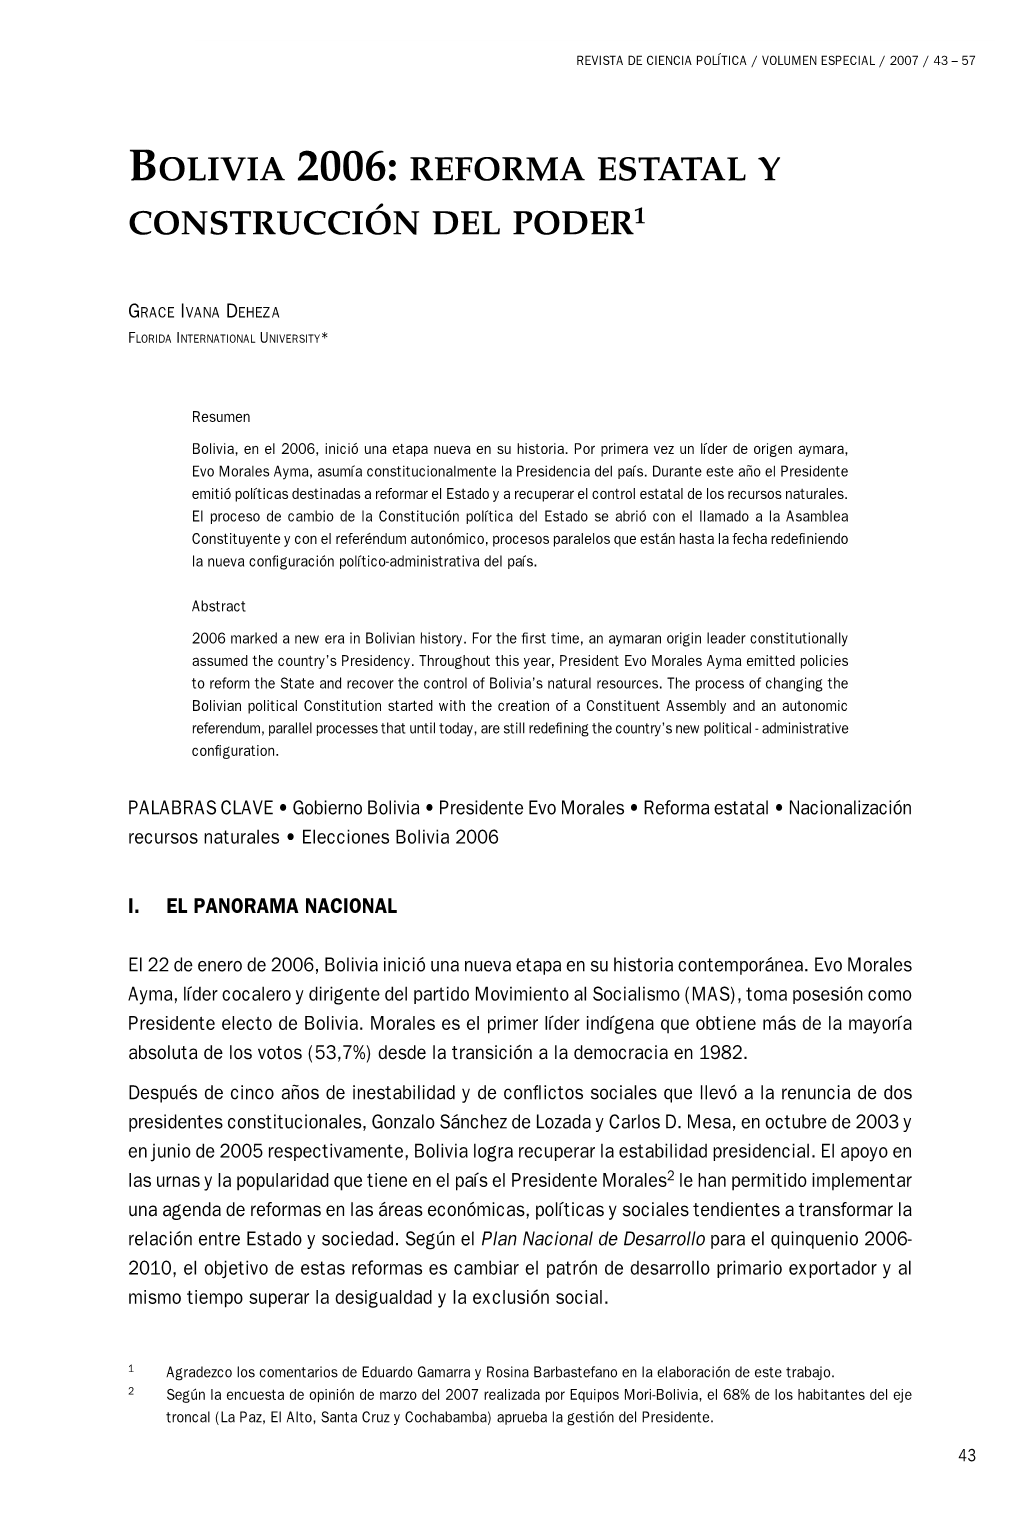 Bolivia 2006: Reforma Estatal Y Construcción Del Poder